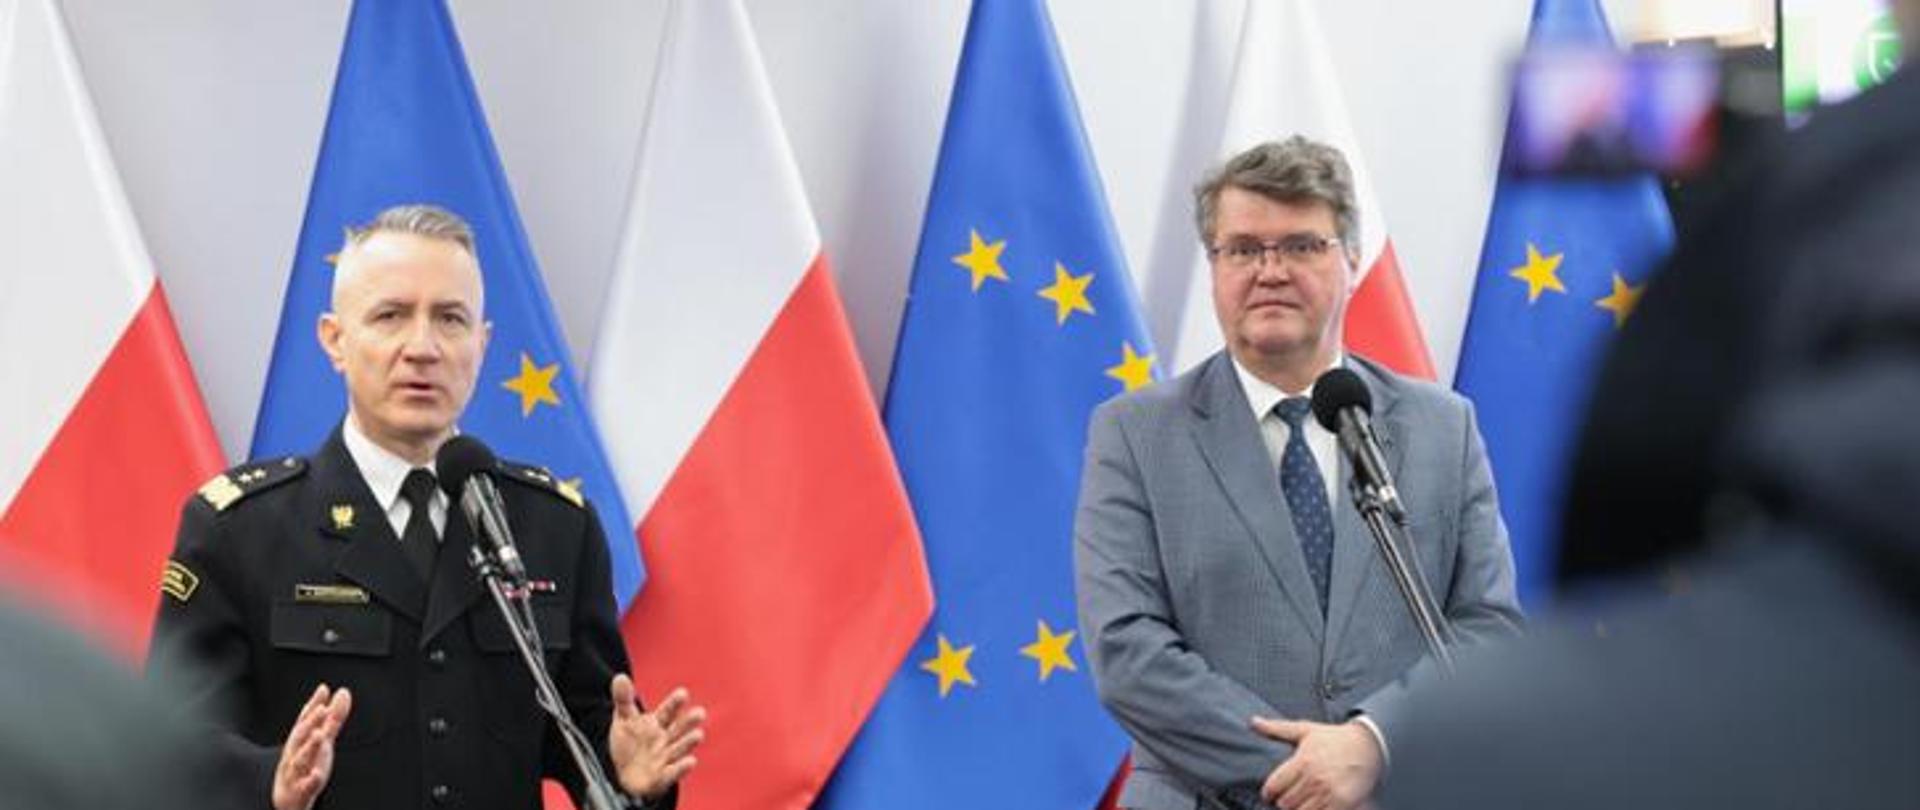 Na zdjęciu widzimy dwóch mężczyzn stojących przed mikrofonami na tle flag Polski i Uni Europejskiej. Po lewej generał PSP w mundurze granatowym, po prawej minister w garniturze szarym.